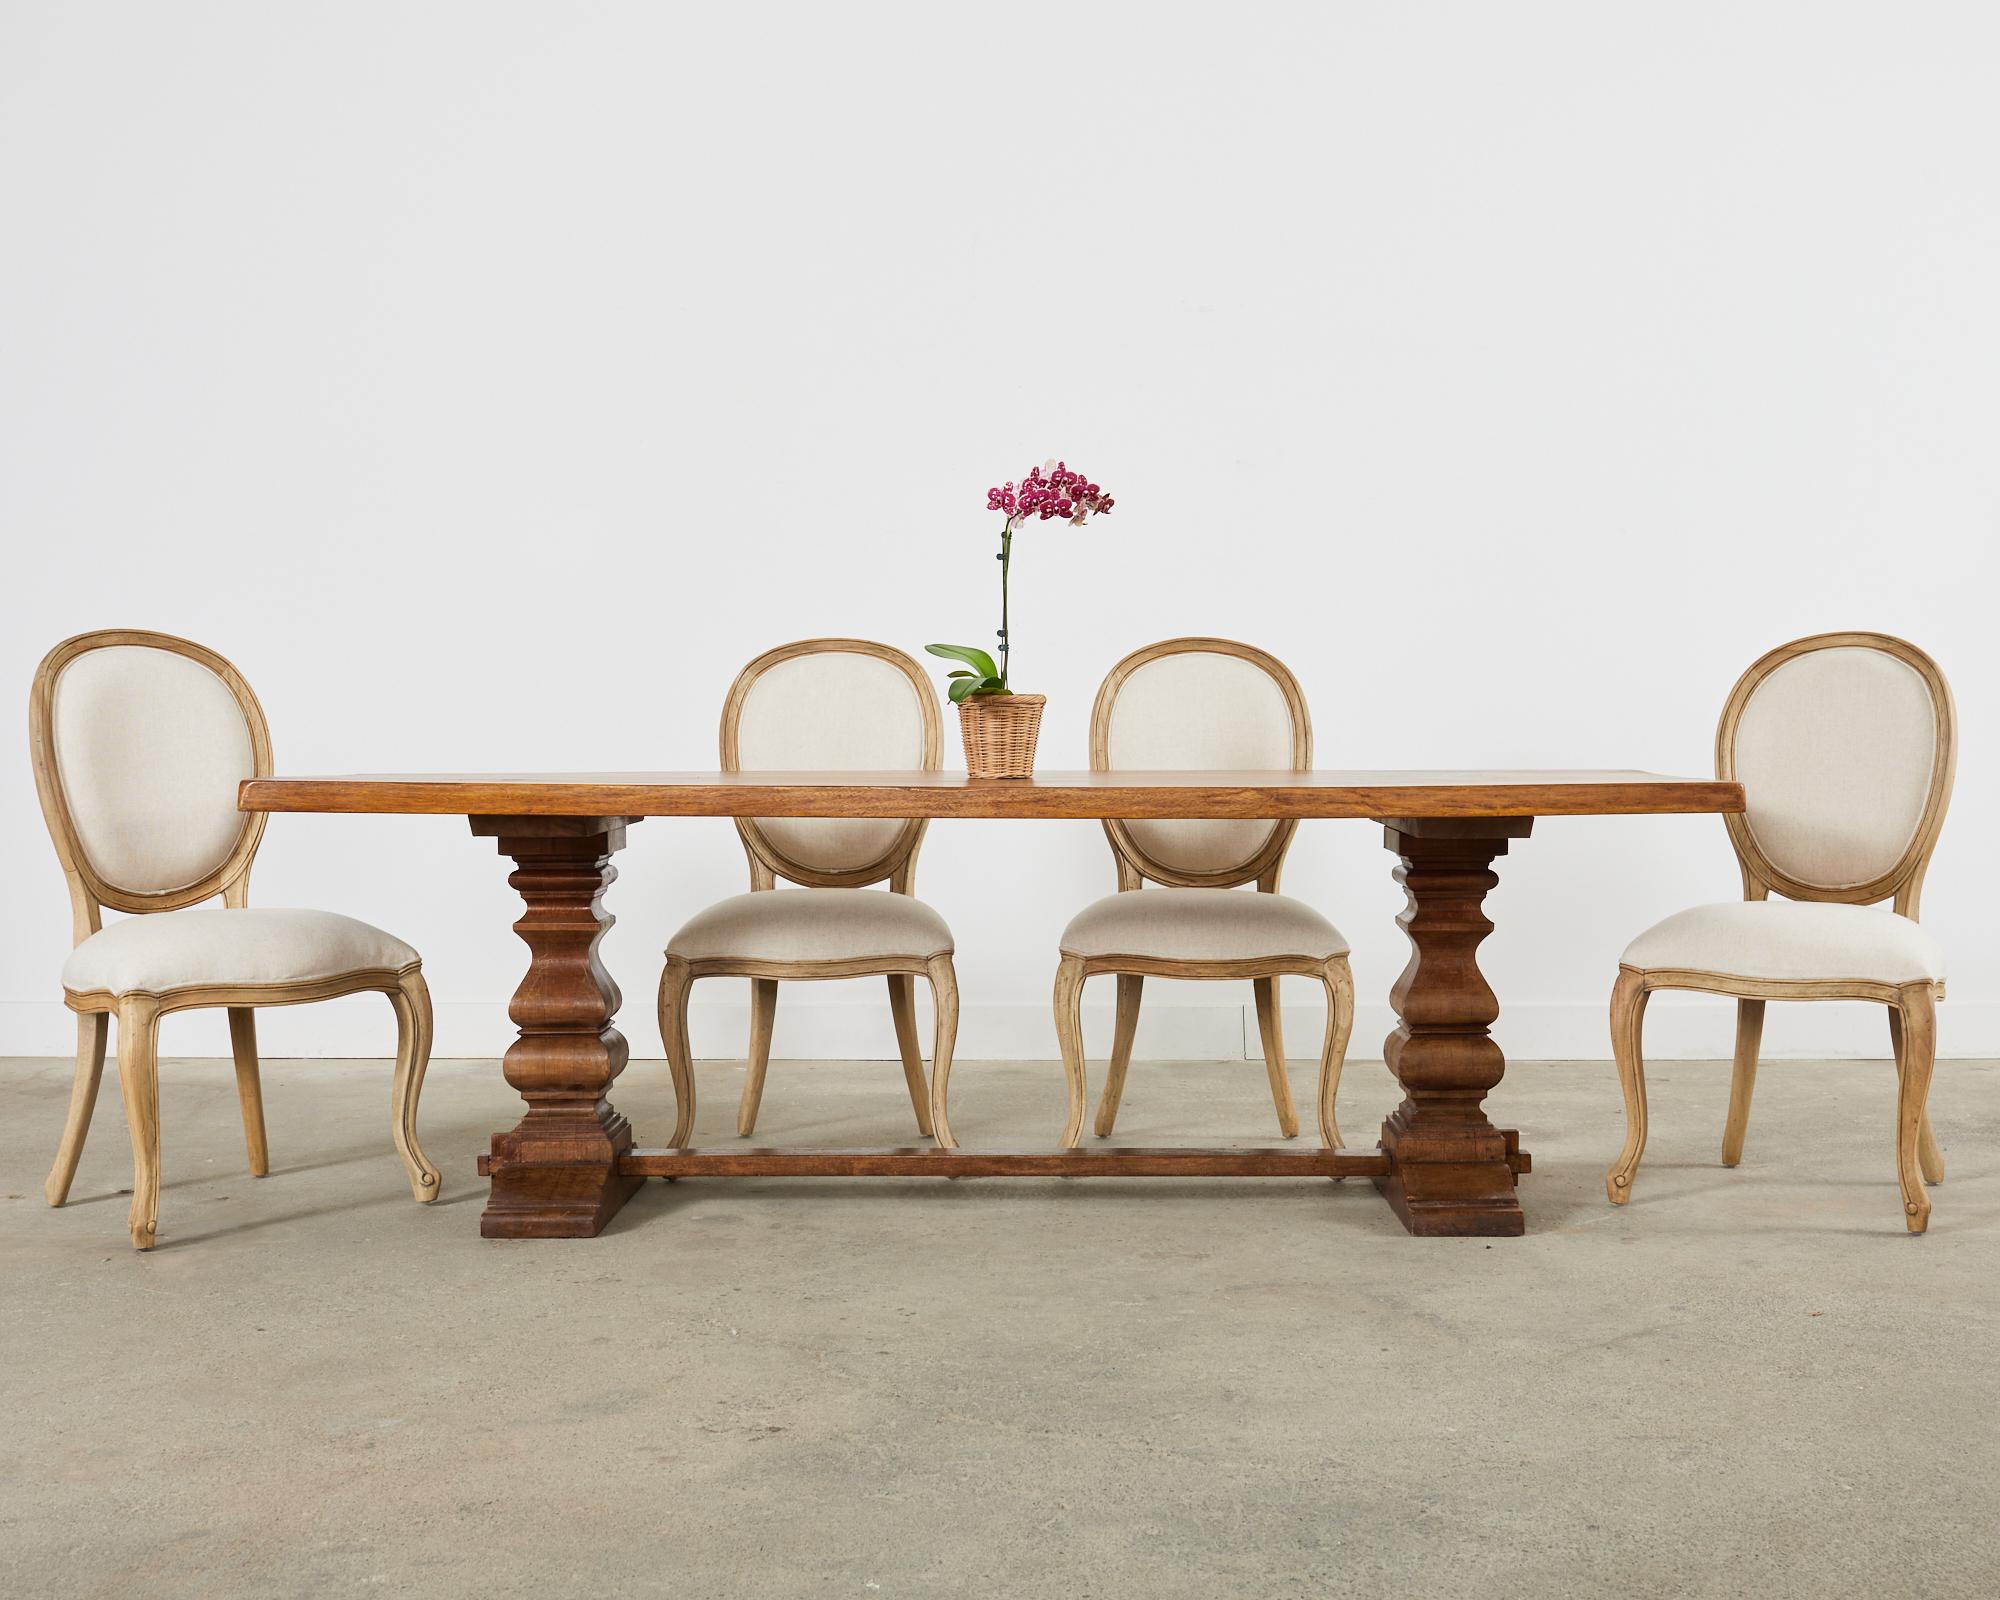 Wunderschönes Set aus sechs Esszimmerstühlen im französischen Landhausstil. Die Stühle haben große, dicke Holzrahmen mit einer natürlichen, organischen und modernen Holzoberfläche. Die natürliche Patina bringt die rustikale Oberfläche und die